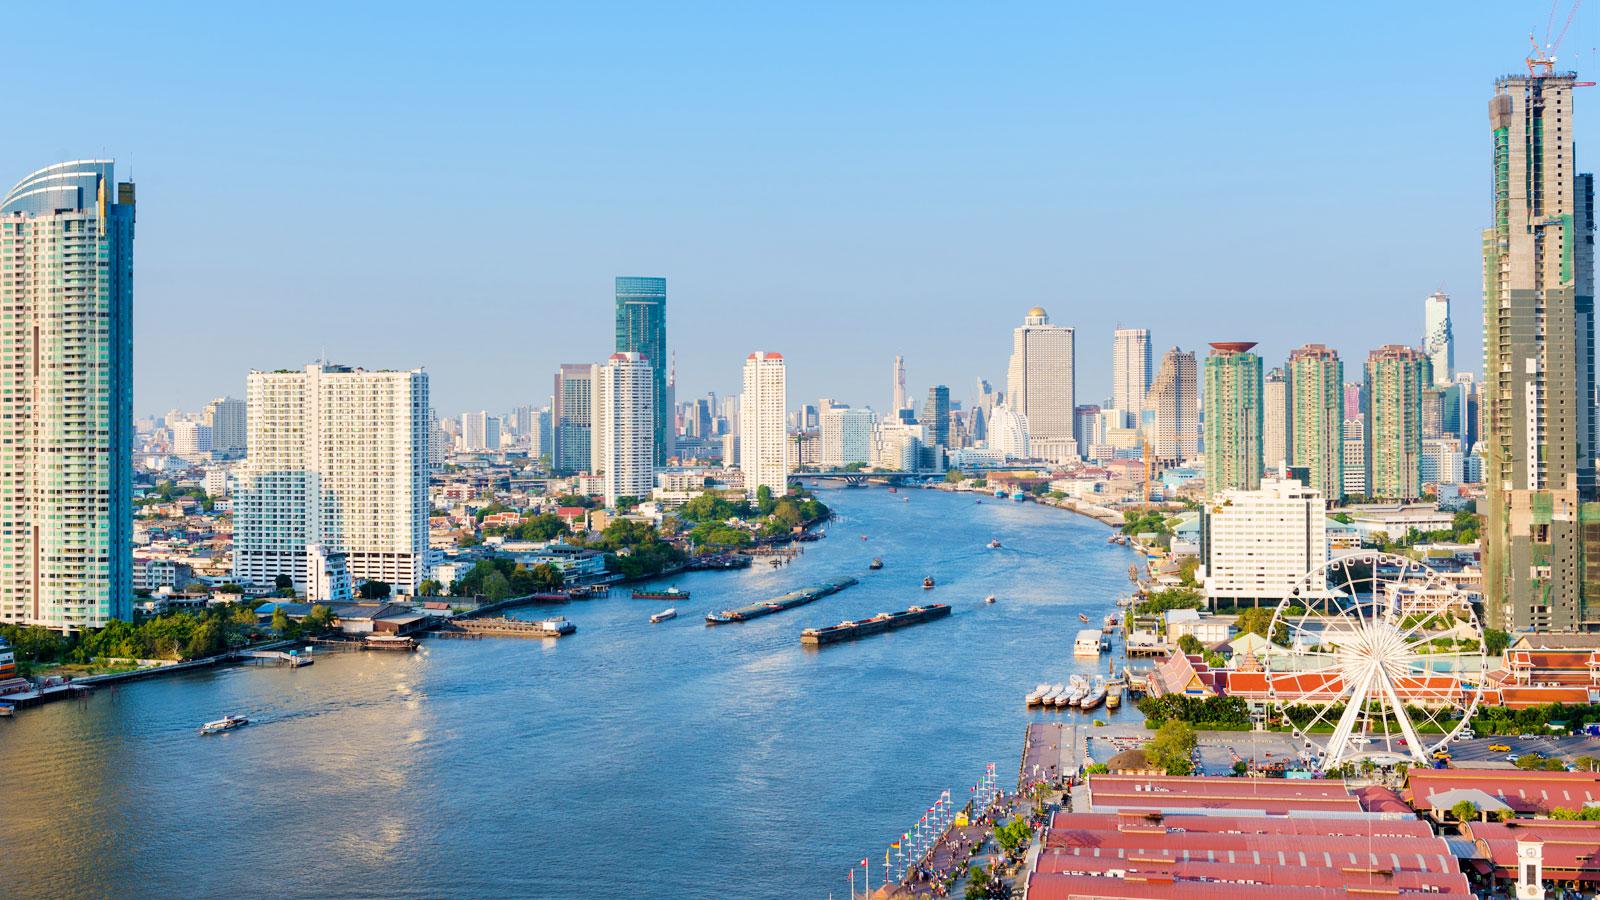 Tour du lịch Bangkok - Pattaya (Khách sạn 4*) KH tháng 4 HCM 